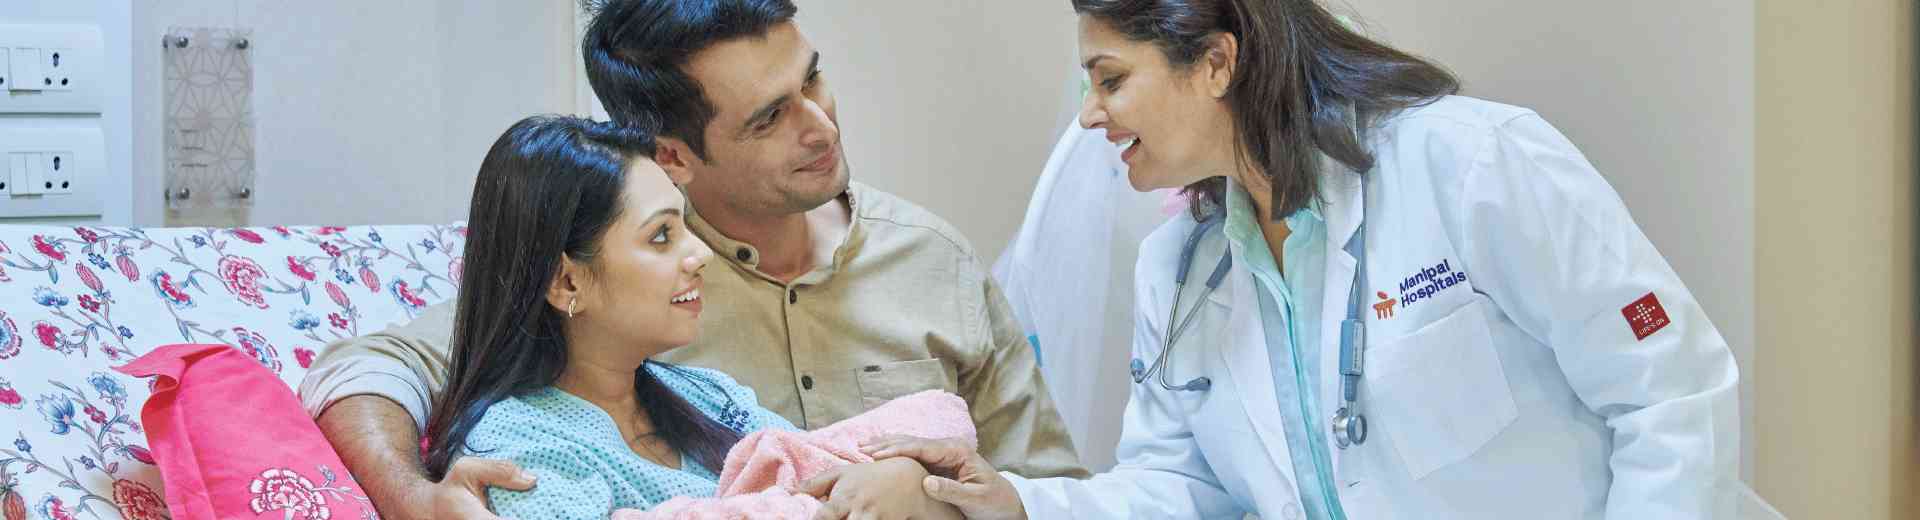 Endoscopy during pregnancy when necessary in jayanagar